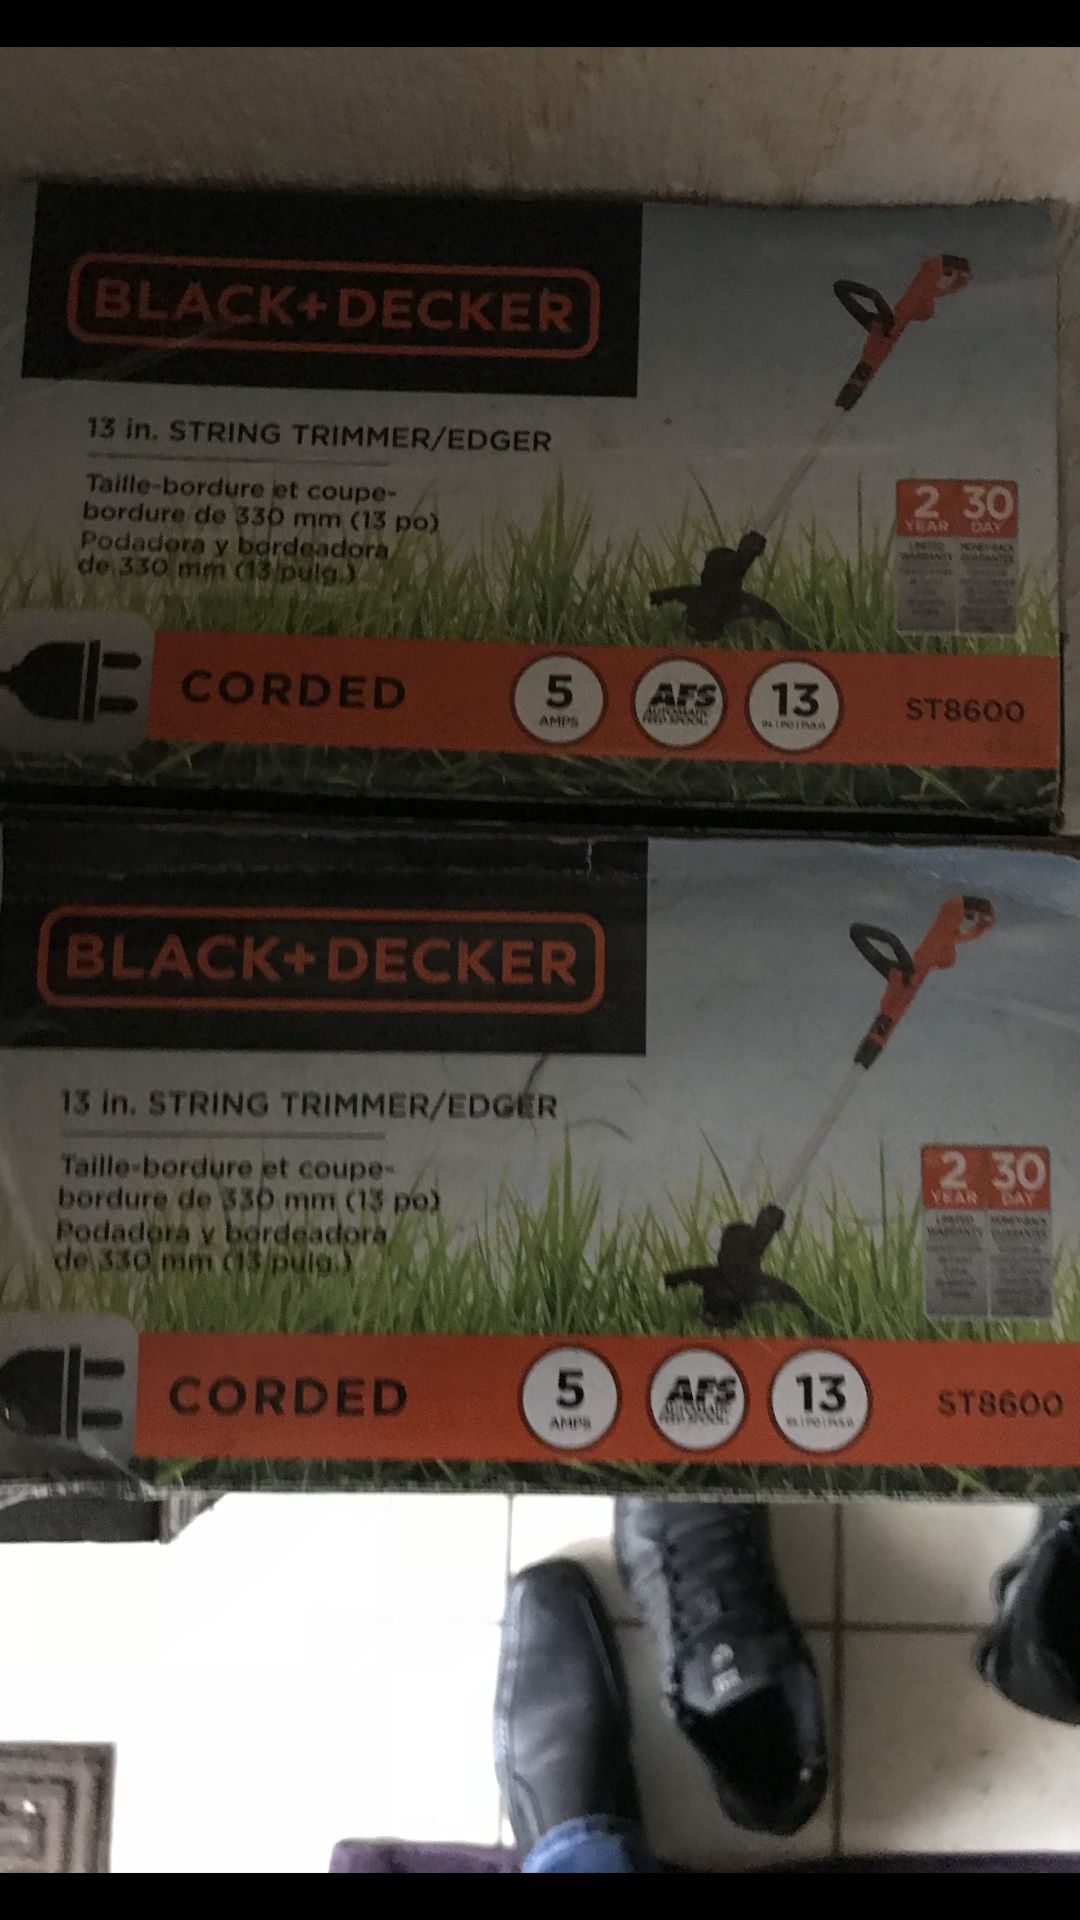 Black+decker ST8600 5 Amp 13 String Trimmer / Edger